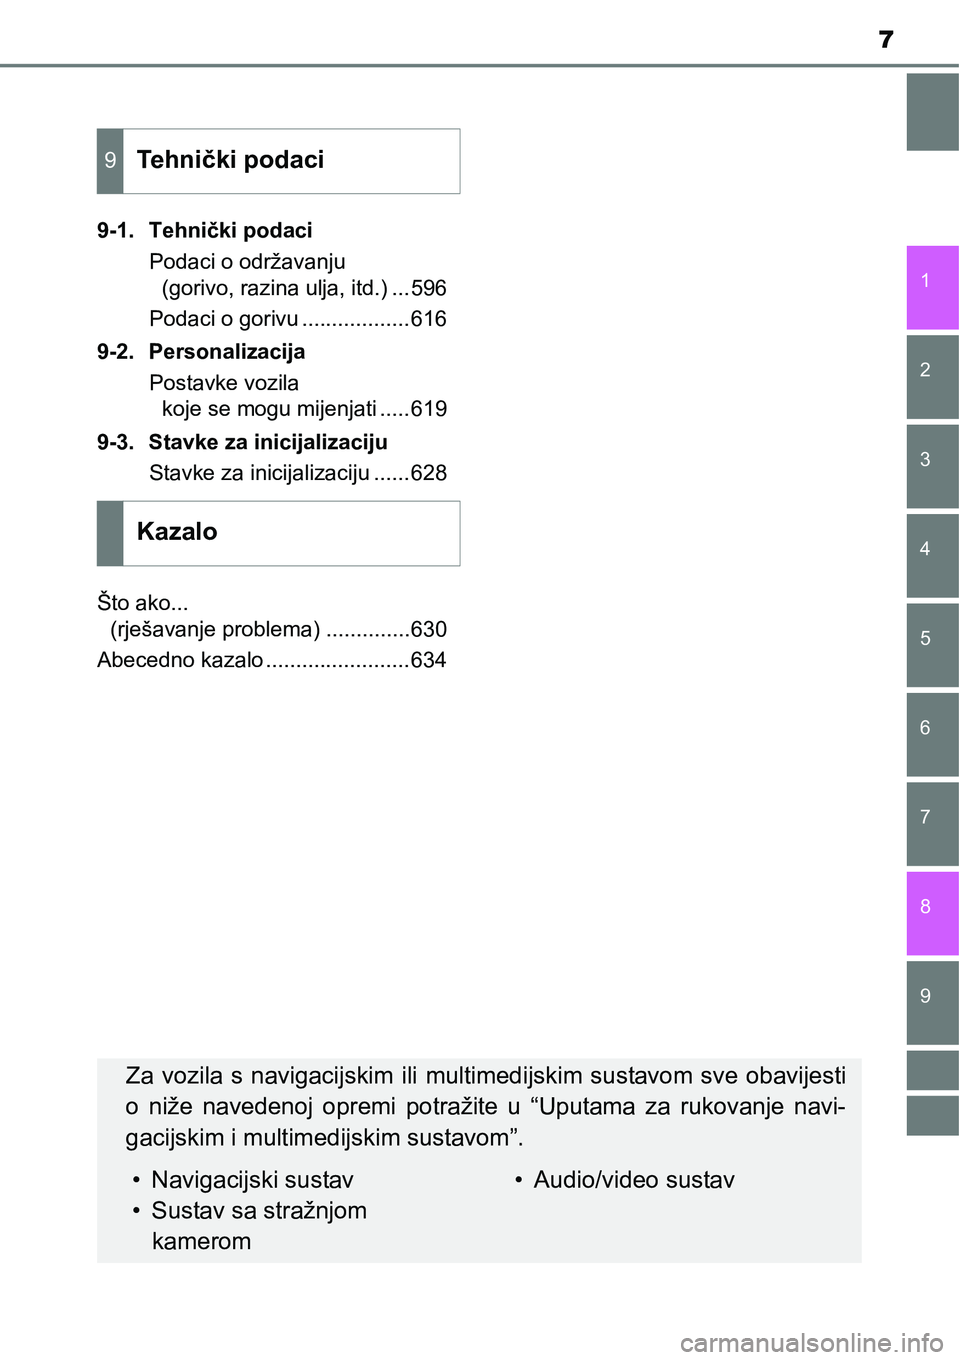 TOYOTA AVENSIS 2015  Upute Za Rukovanje (in Croatian) 7
1
8 6 5
4
3
2
9
7
9-1. Tehnički podaci
Podaci o održavanju 
(gorivo, razina ulja, itd.) ...596
Podaci o gorivu ..................616
9-2. Personalizacija
Postavke vozila 
koje se mogu mijenjati ..